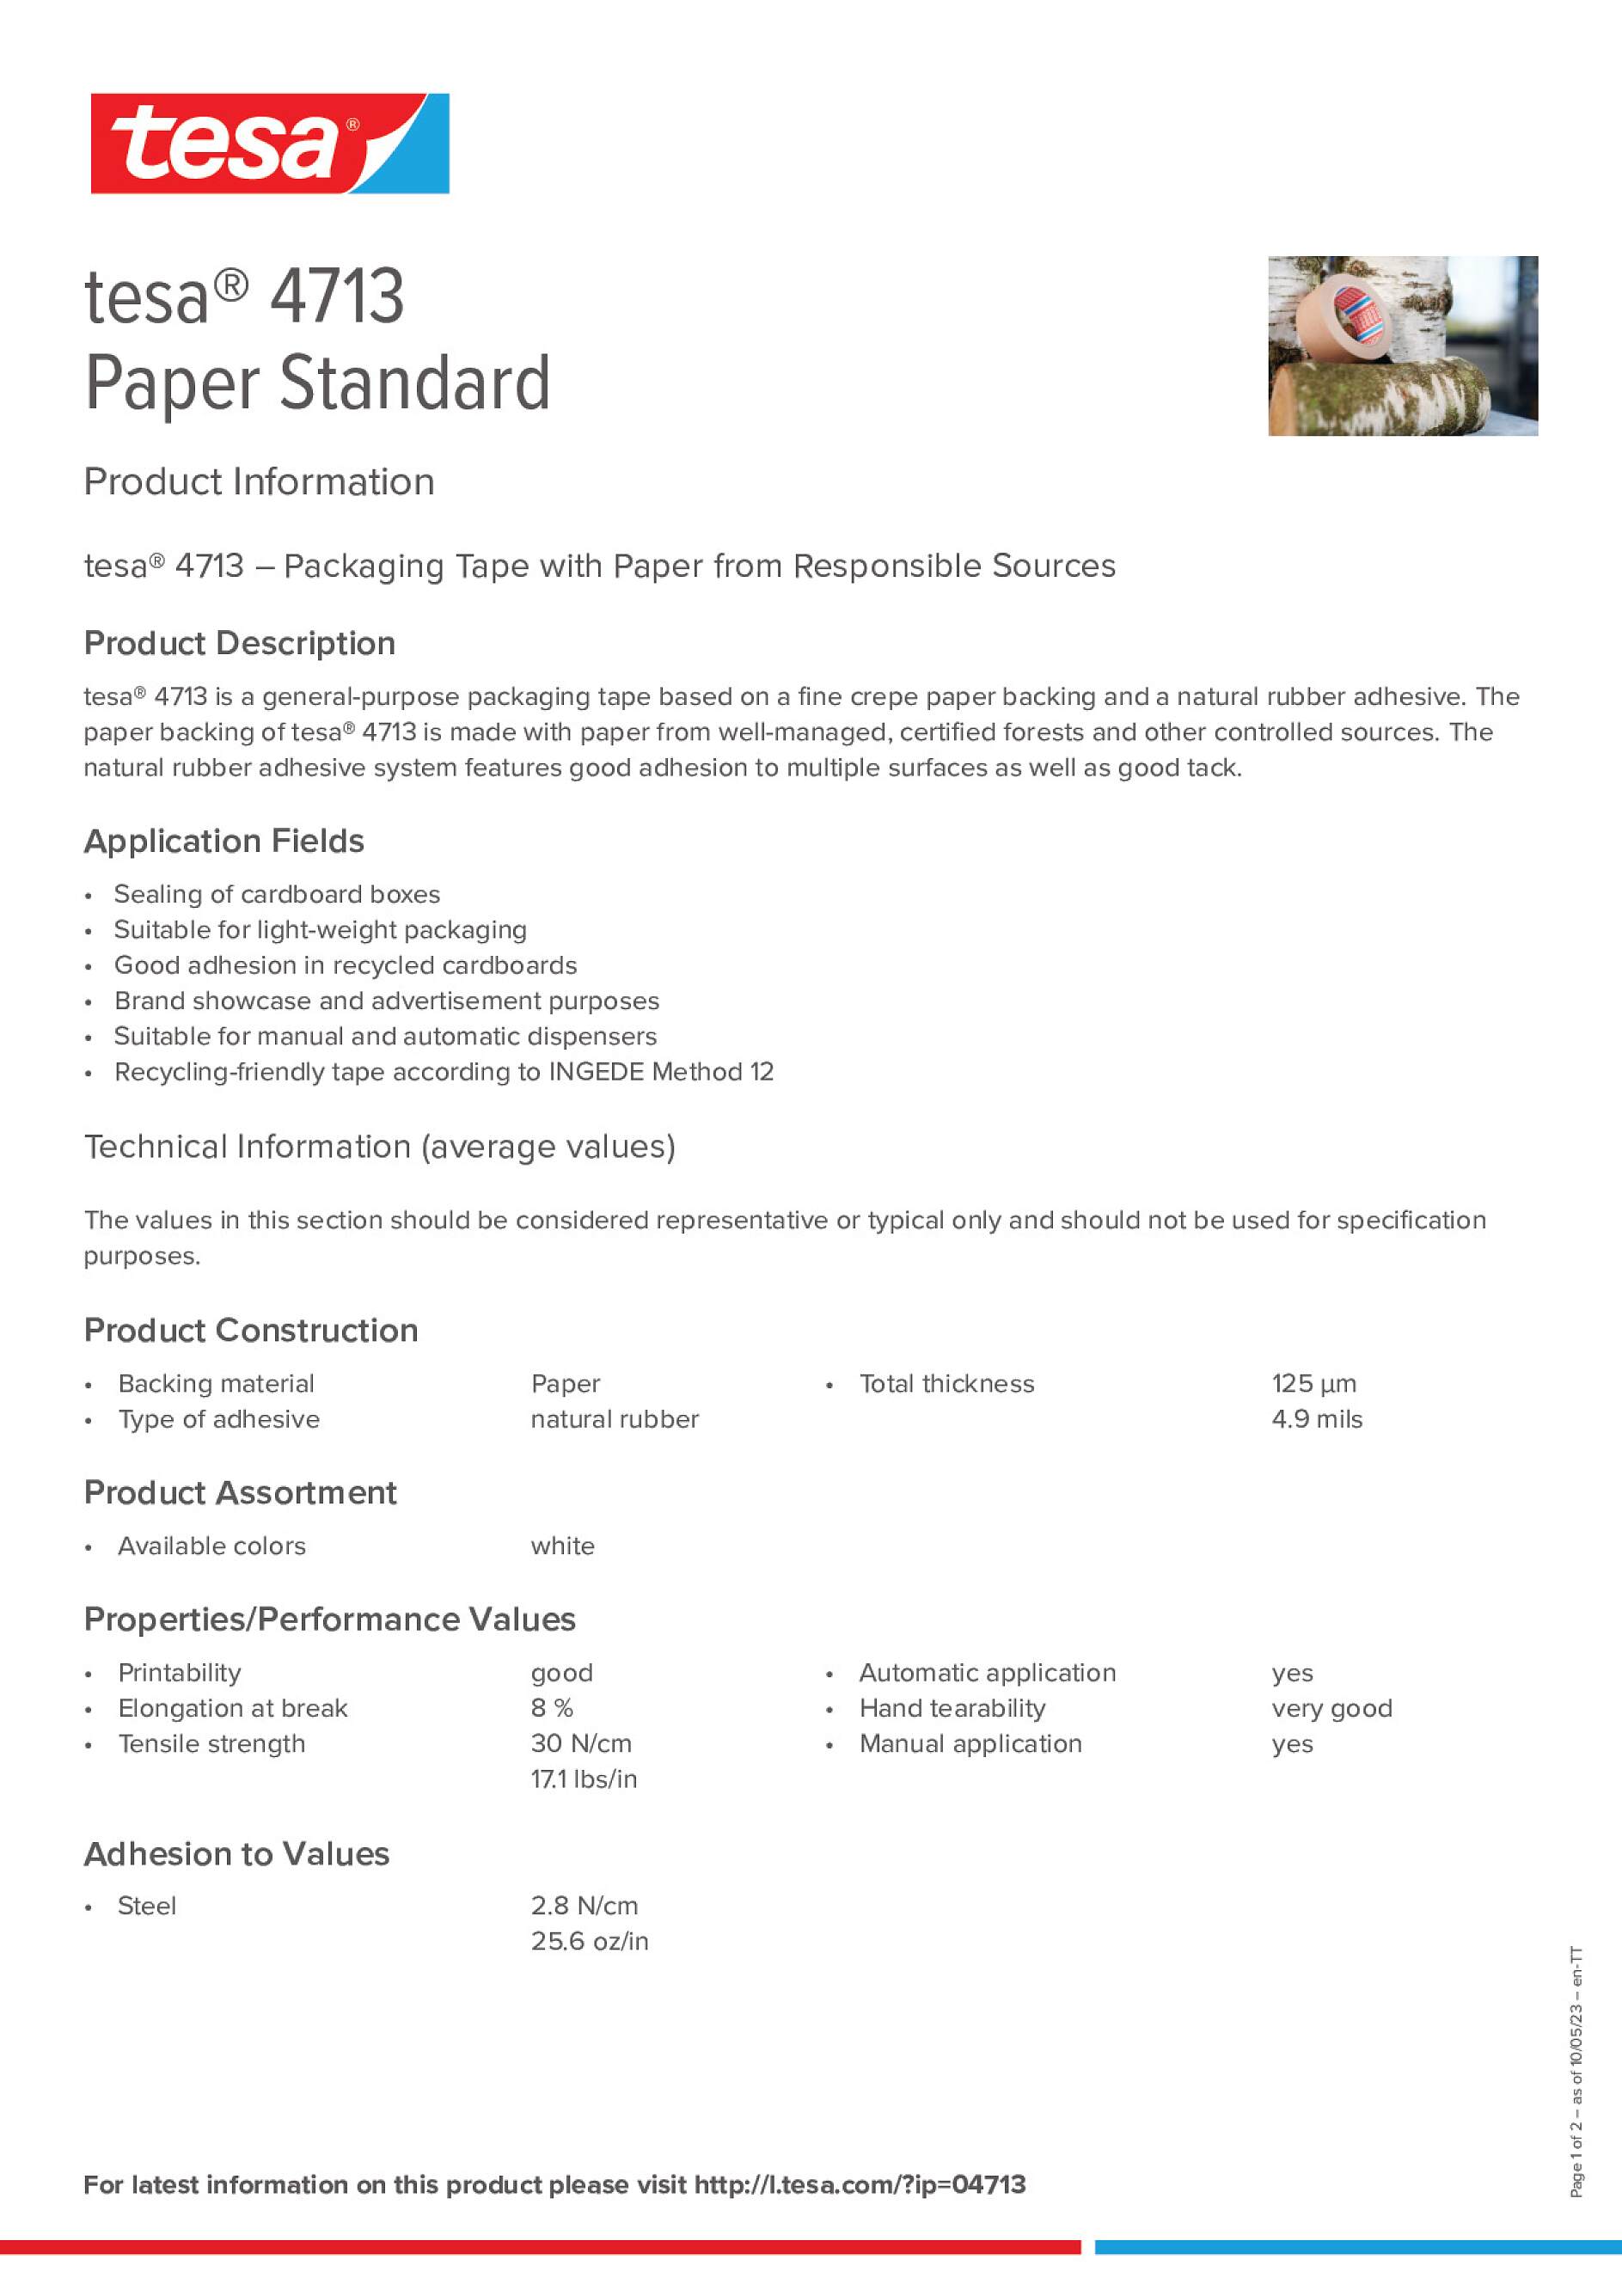 tesa® 4713 Paper Standard - tesa